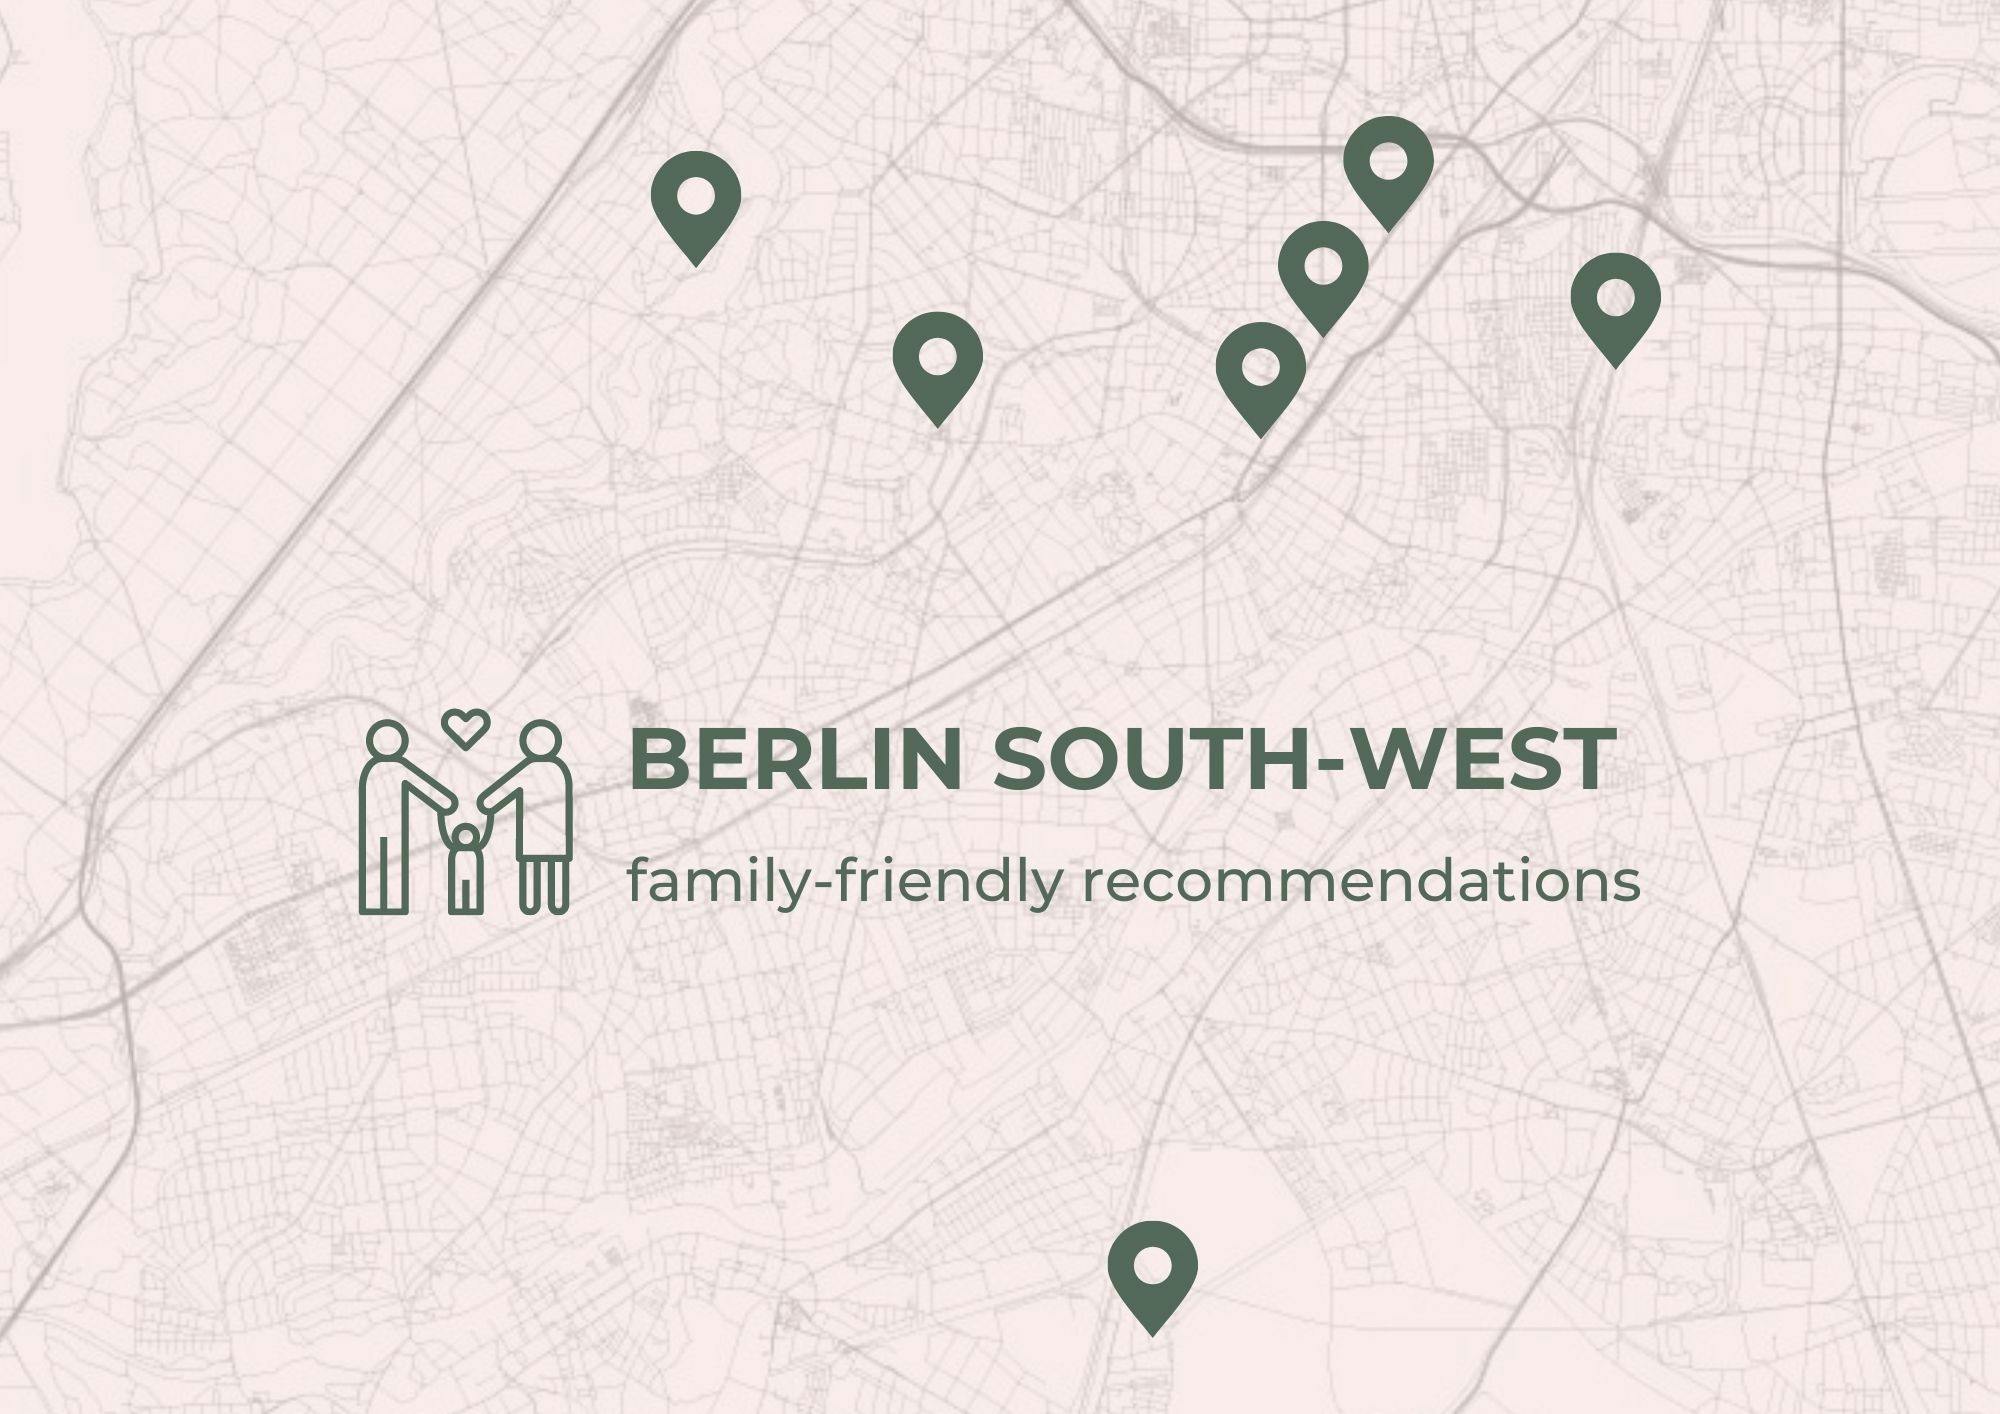 Southwest Berlin map